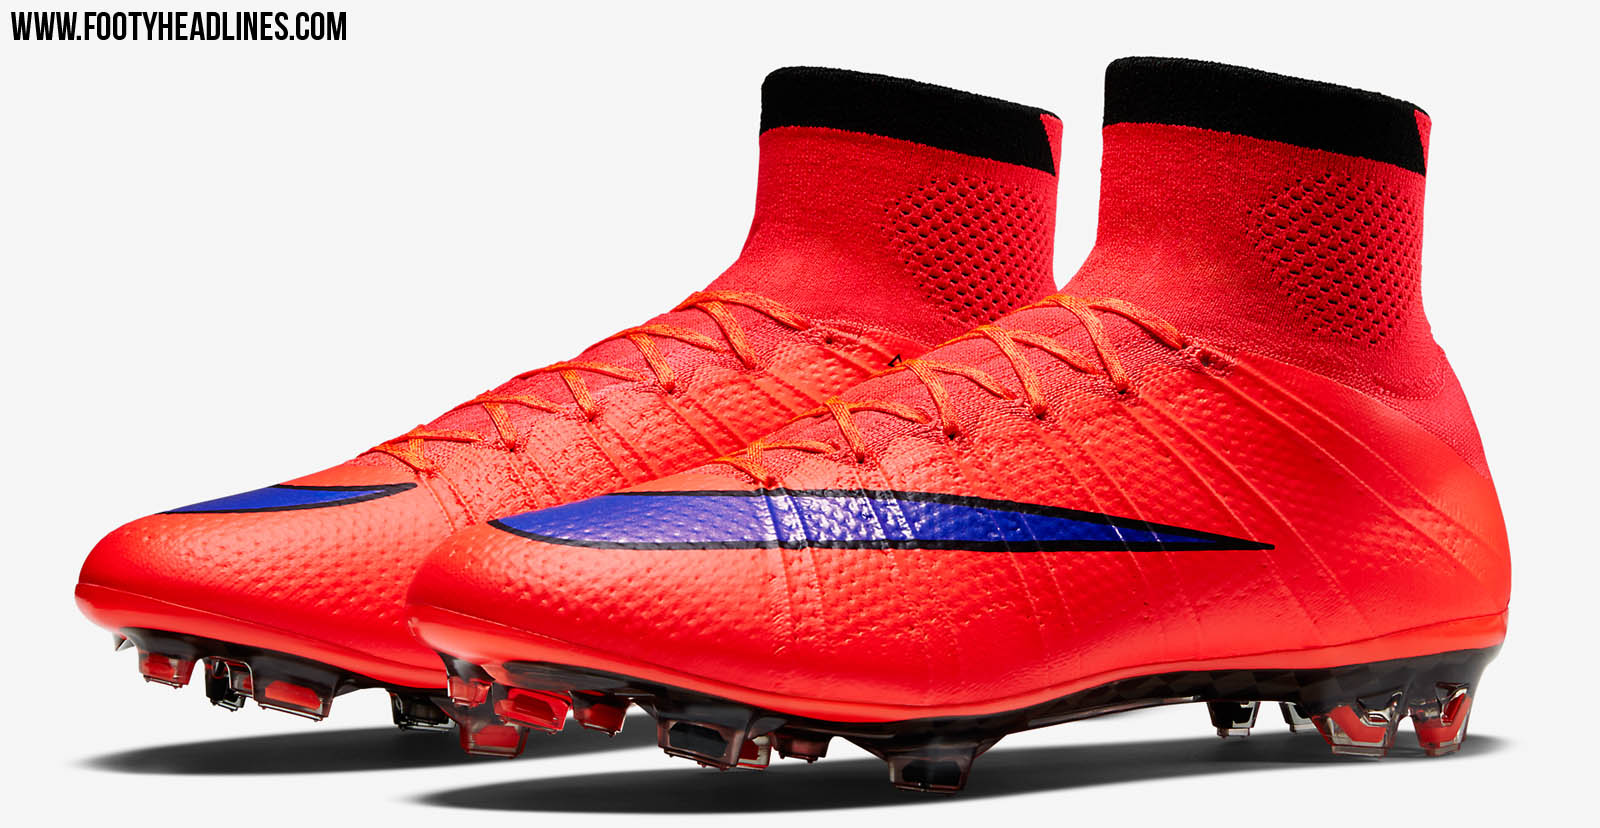 Leer Cromático montaje Red Nike Mercurial Superfly Intense Heat Pack 2015 Boots Released - Footy  Headlines